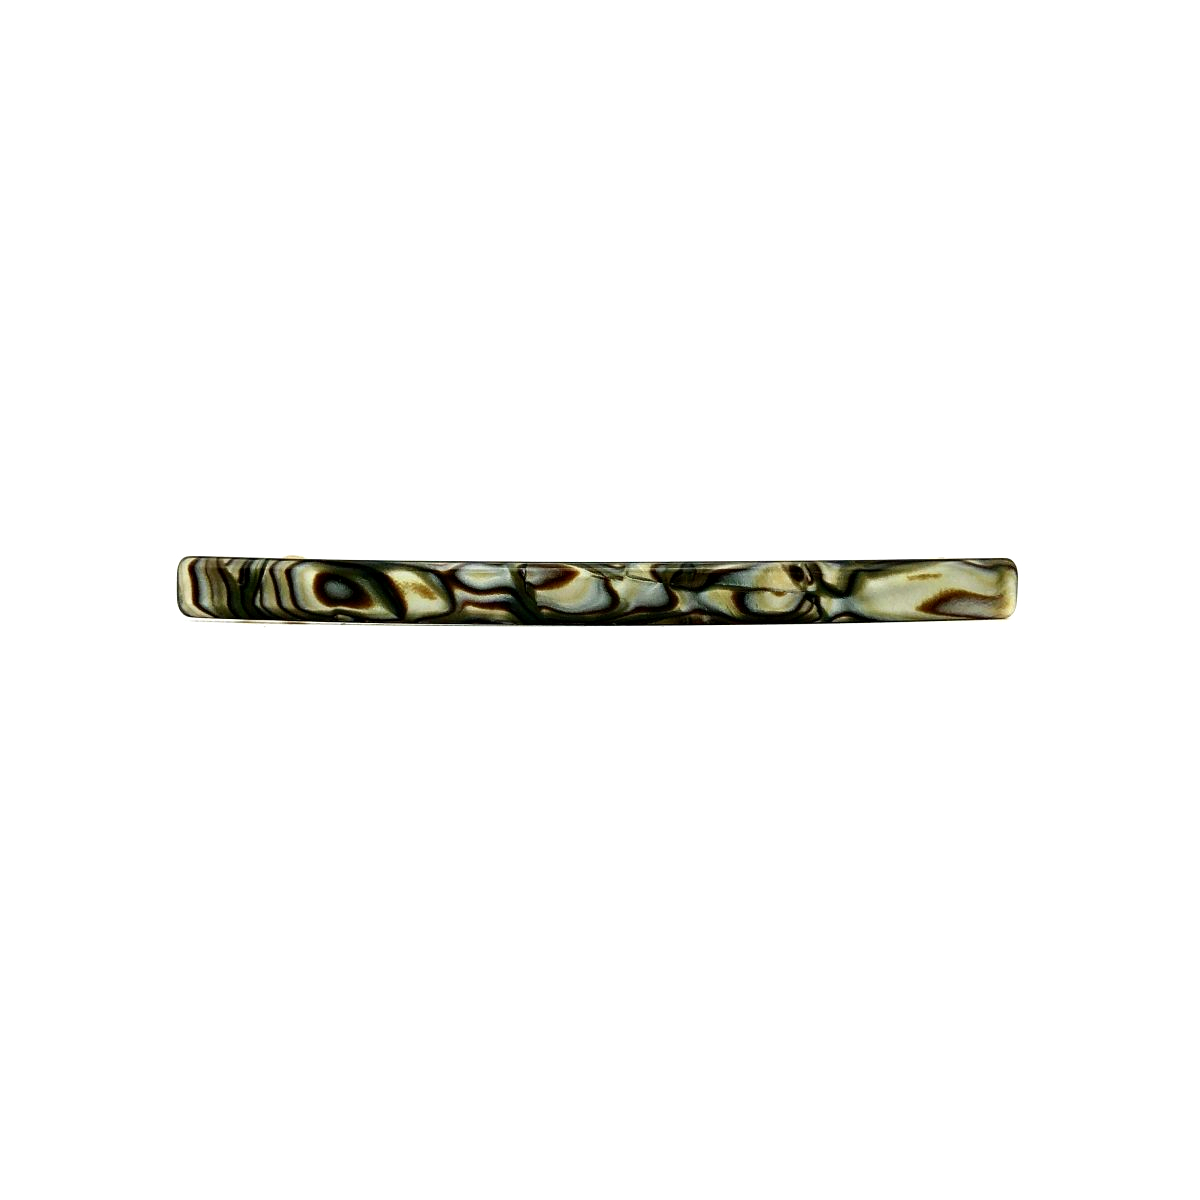 Haarspange perlmutt/braun - lang, flach - 10,3 cm